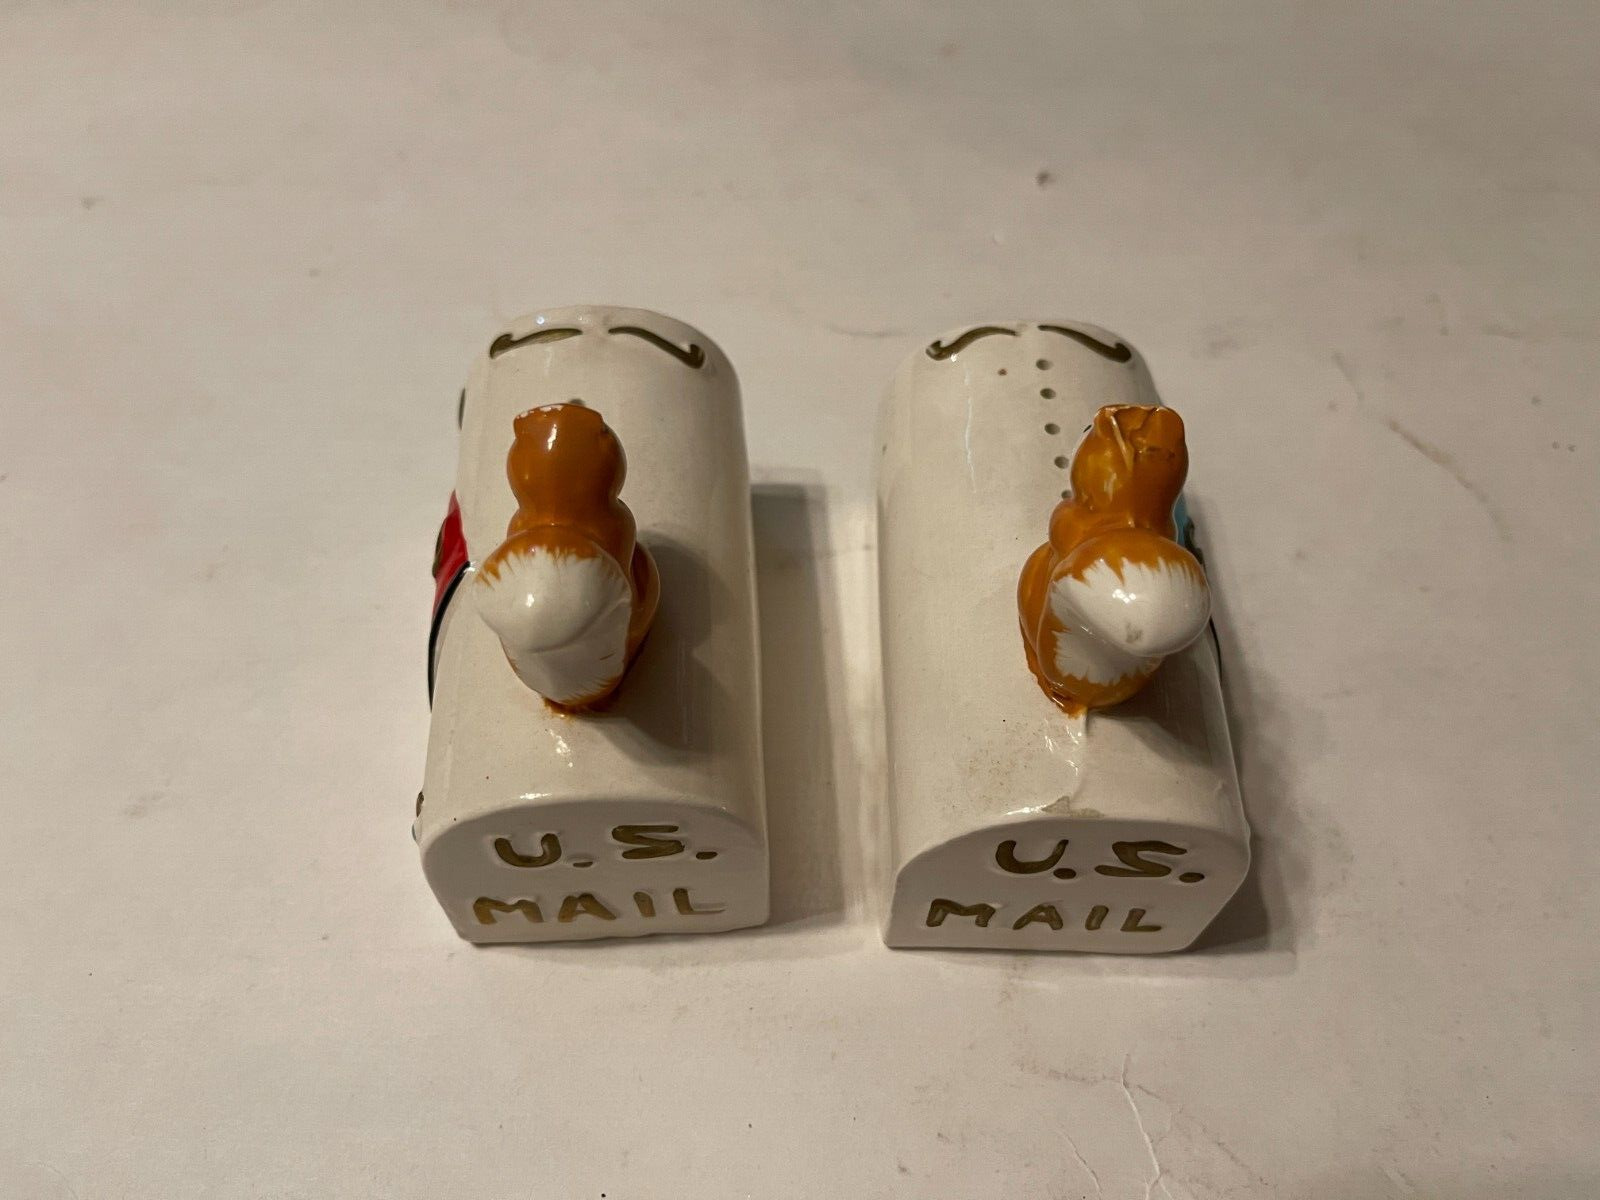 Vintage Salt Shakers US Mail Squirrels on Top japan